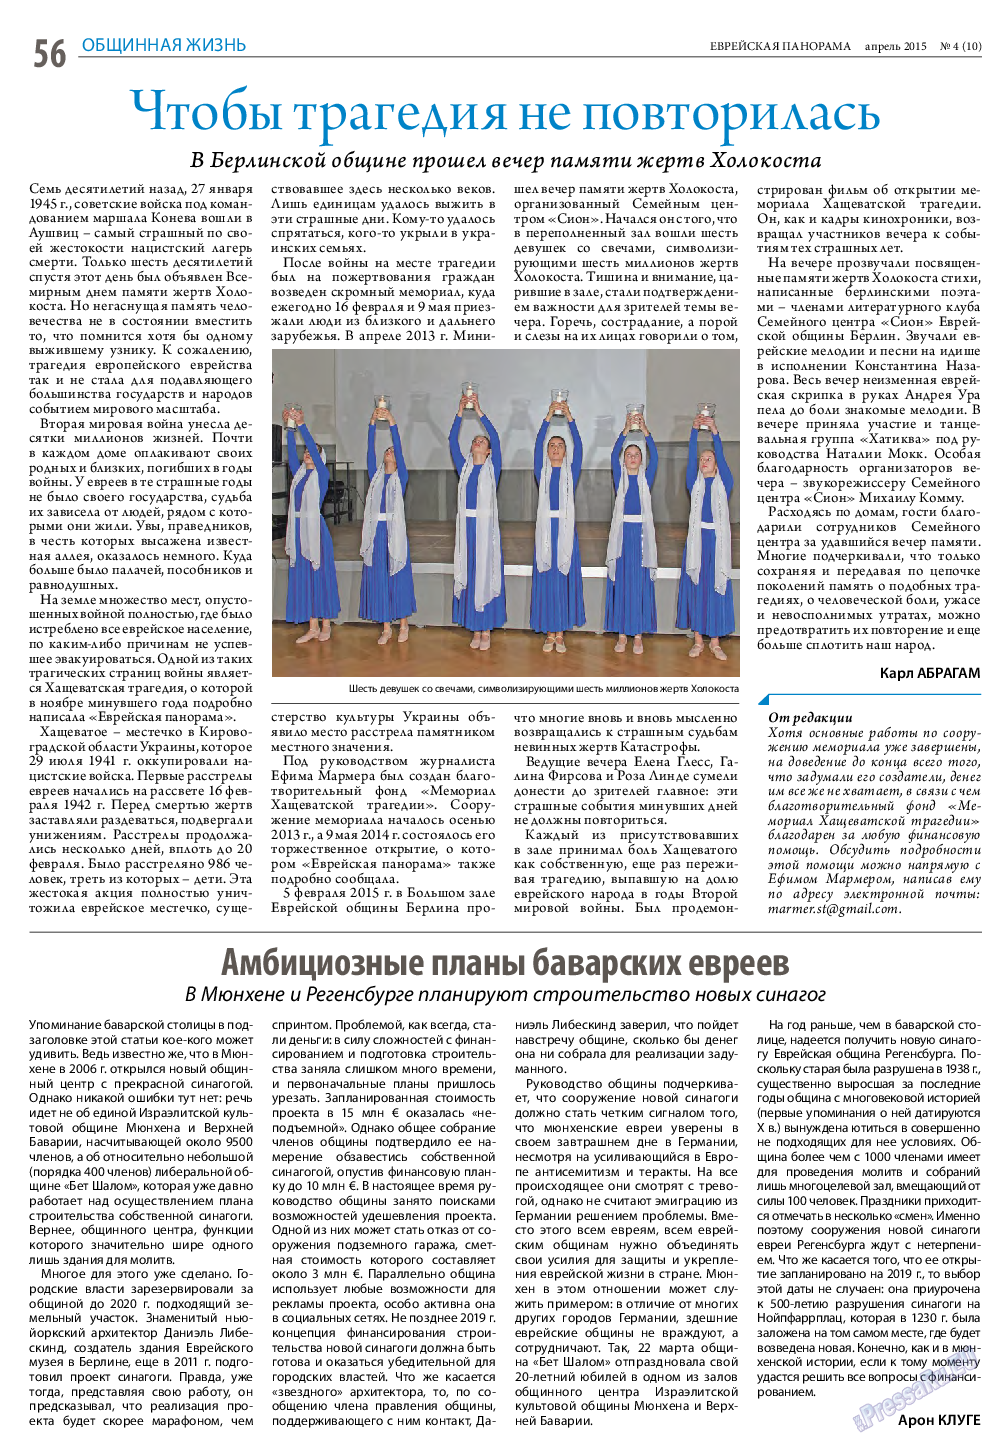 Еврейская панорама (газета). 2015 год, номер 4, стр. 56